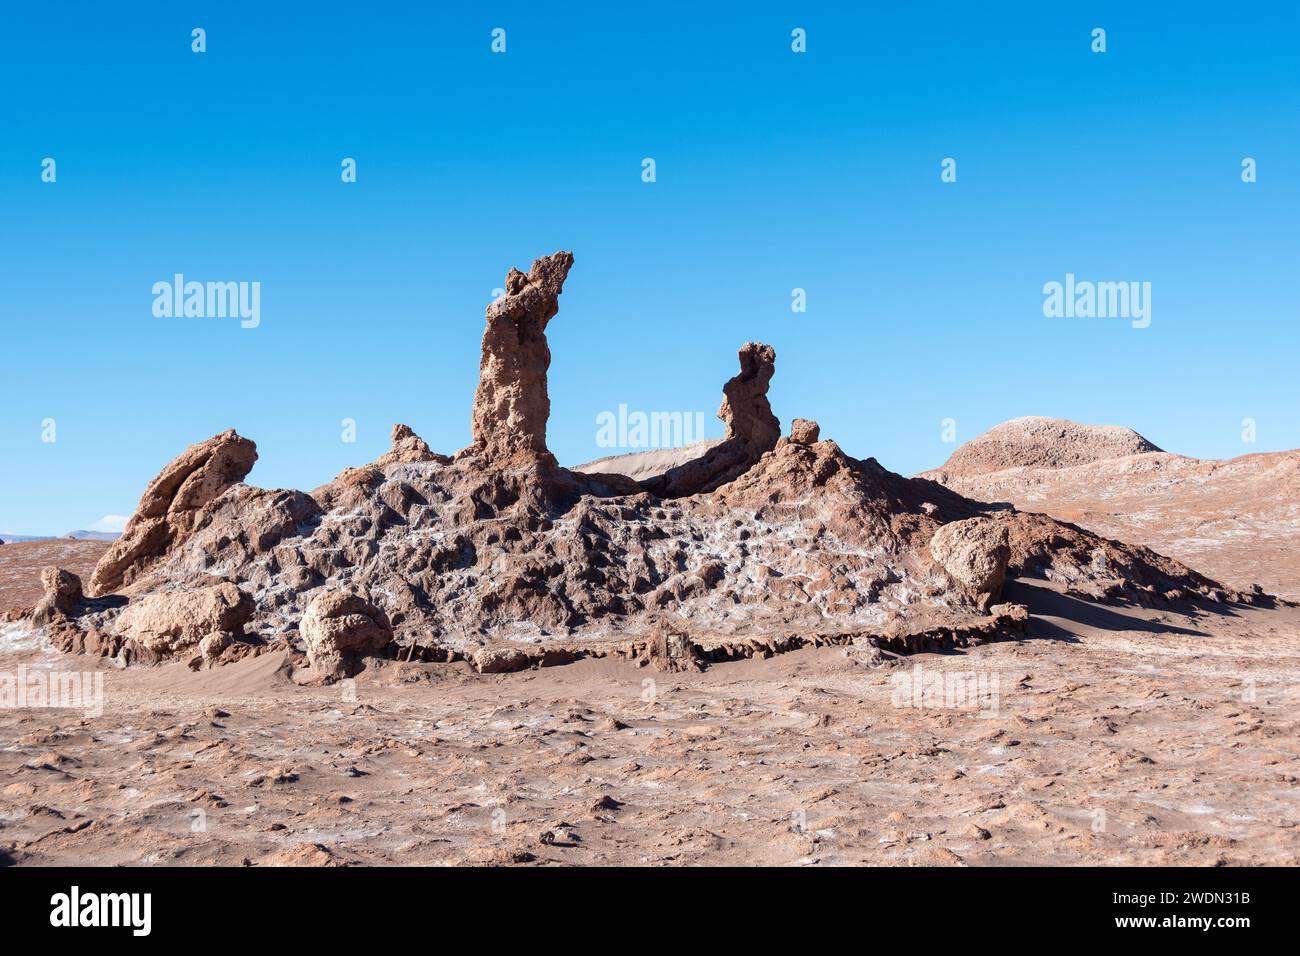 Desierto de Atacama, Chile Stock Photo